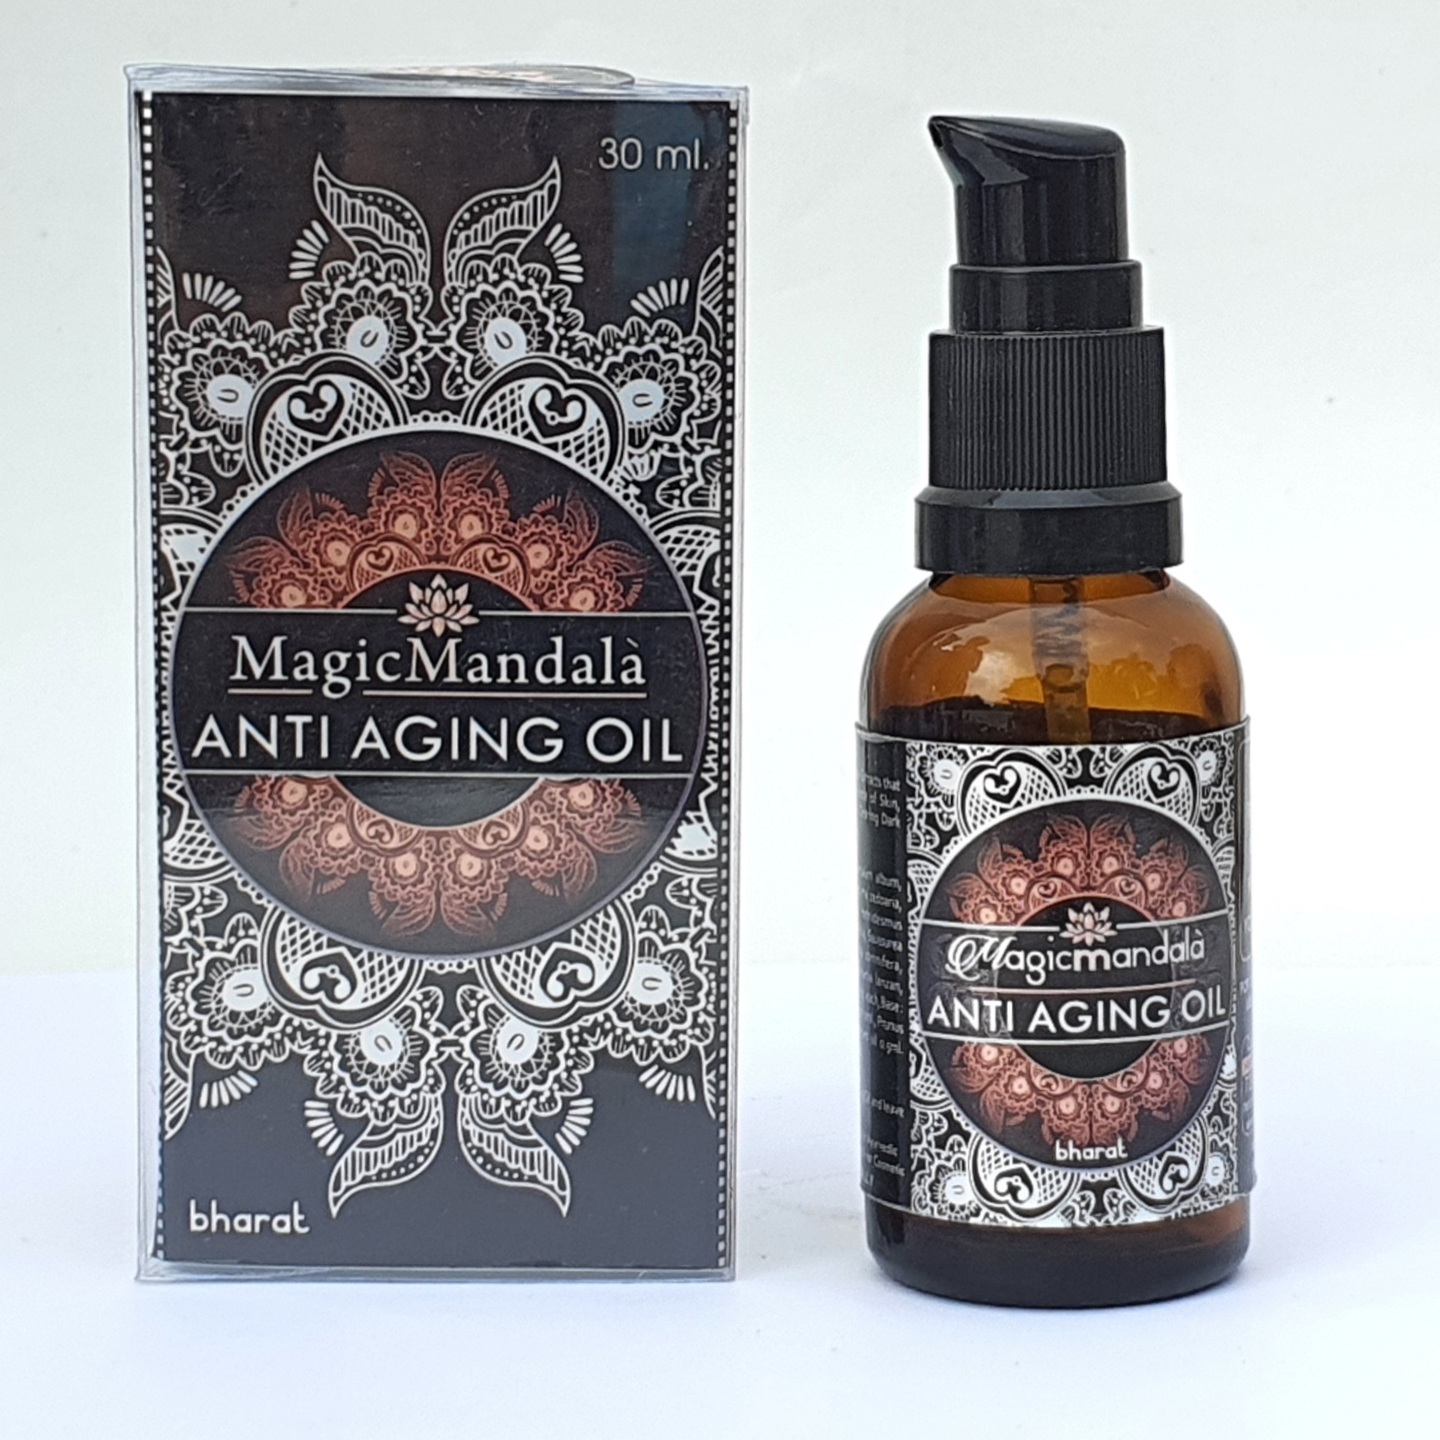 Magic Mandala Anti Aging Oil 30 ml.